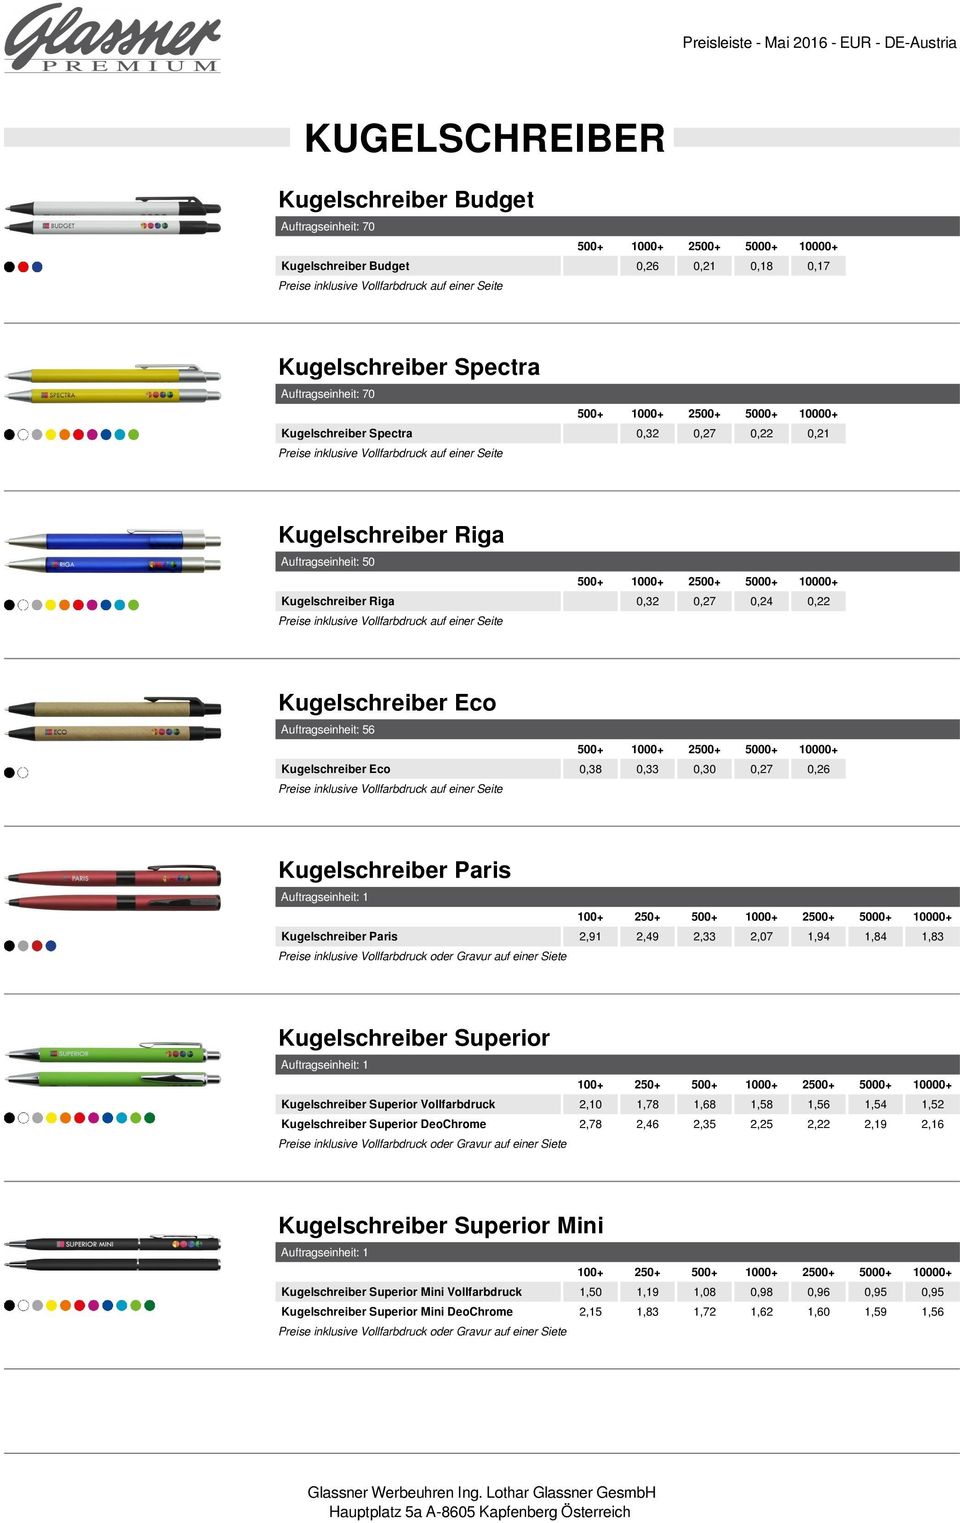 Kugelschreiber Paris Auftragseinheit: 1 Kugelschreiber Paris Preise inklusive Vollfarbdruck oder Gravur auf einer Siete Kugelschreiber Superior Auftragseinheit: 1 2 Kugelschreiber Superior